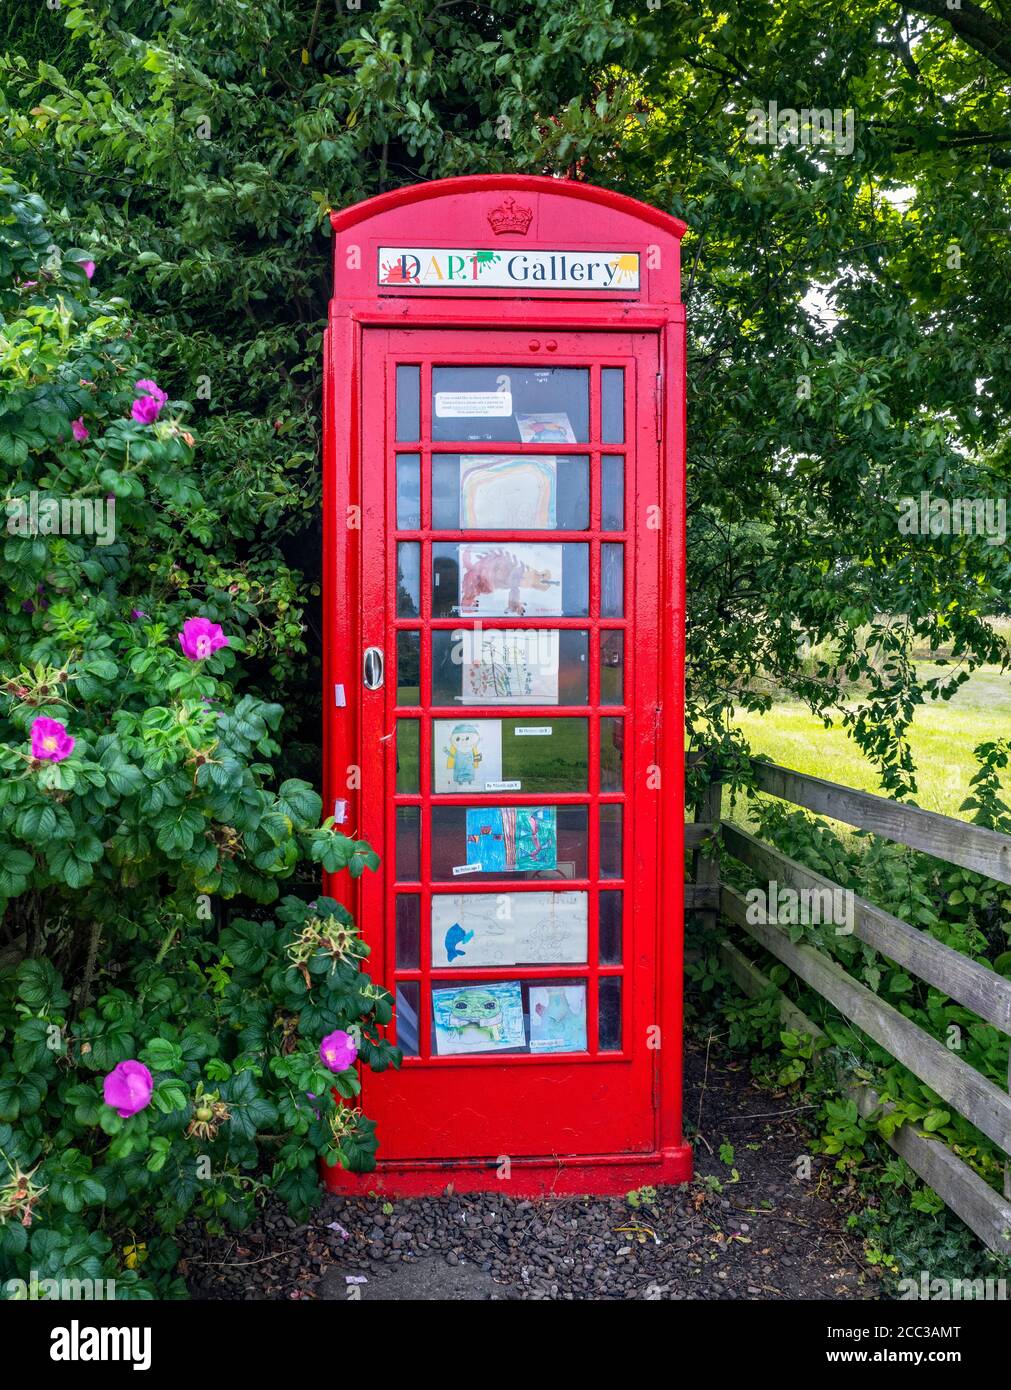 Red Telephone Box utilisé comme galerie d'art, Dirleton, East Lothian, Écosse, Royaume-Uni. Banque D'Images